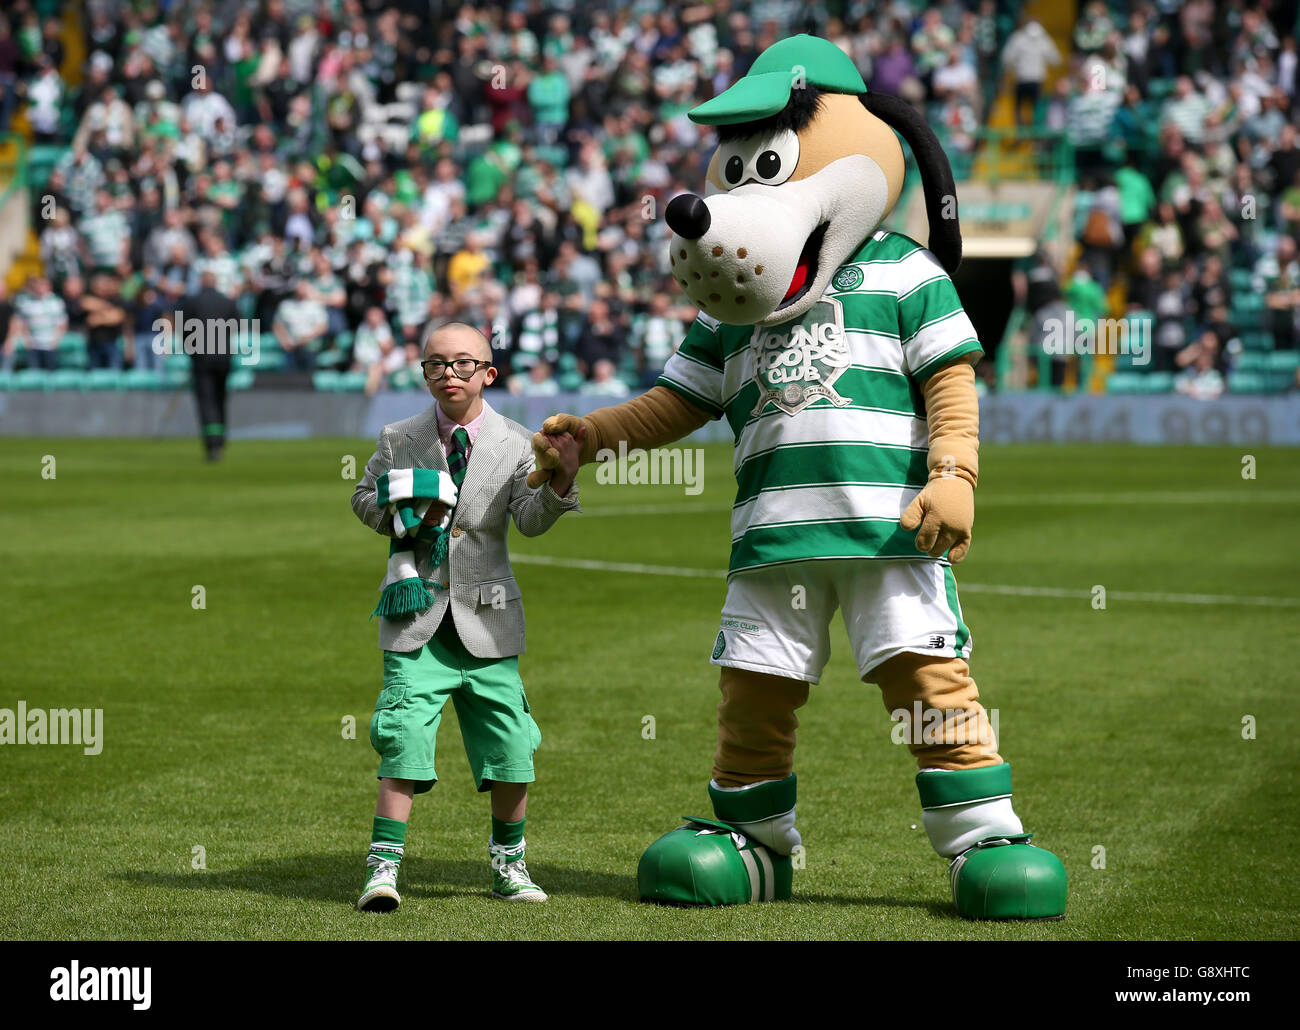 Jay Beatty, ambassadeur de la Celtic football Club Celtic FC Foundation, avec la mascotte du club Hoopy The Huddle Hound à la mi-temps du match Ladbrokes Scottish Premiership au Celtic Park, Glasgow. Banque D'Images